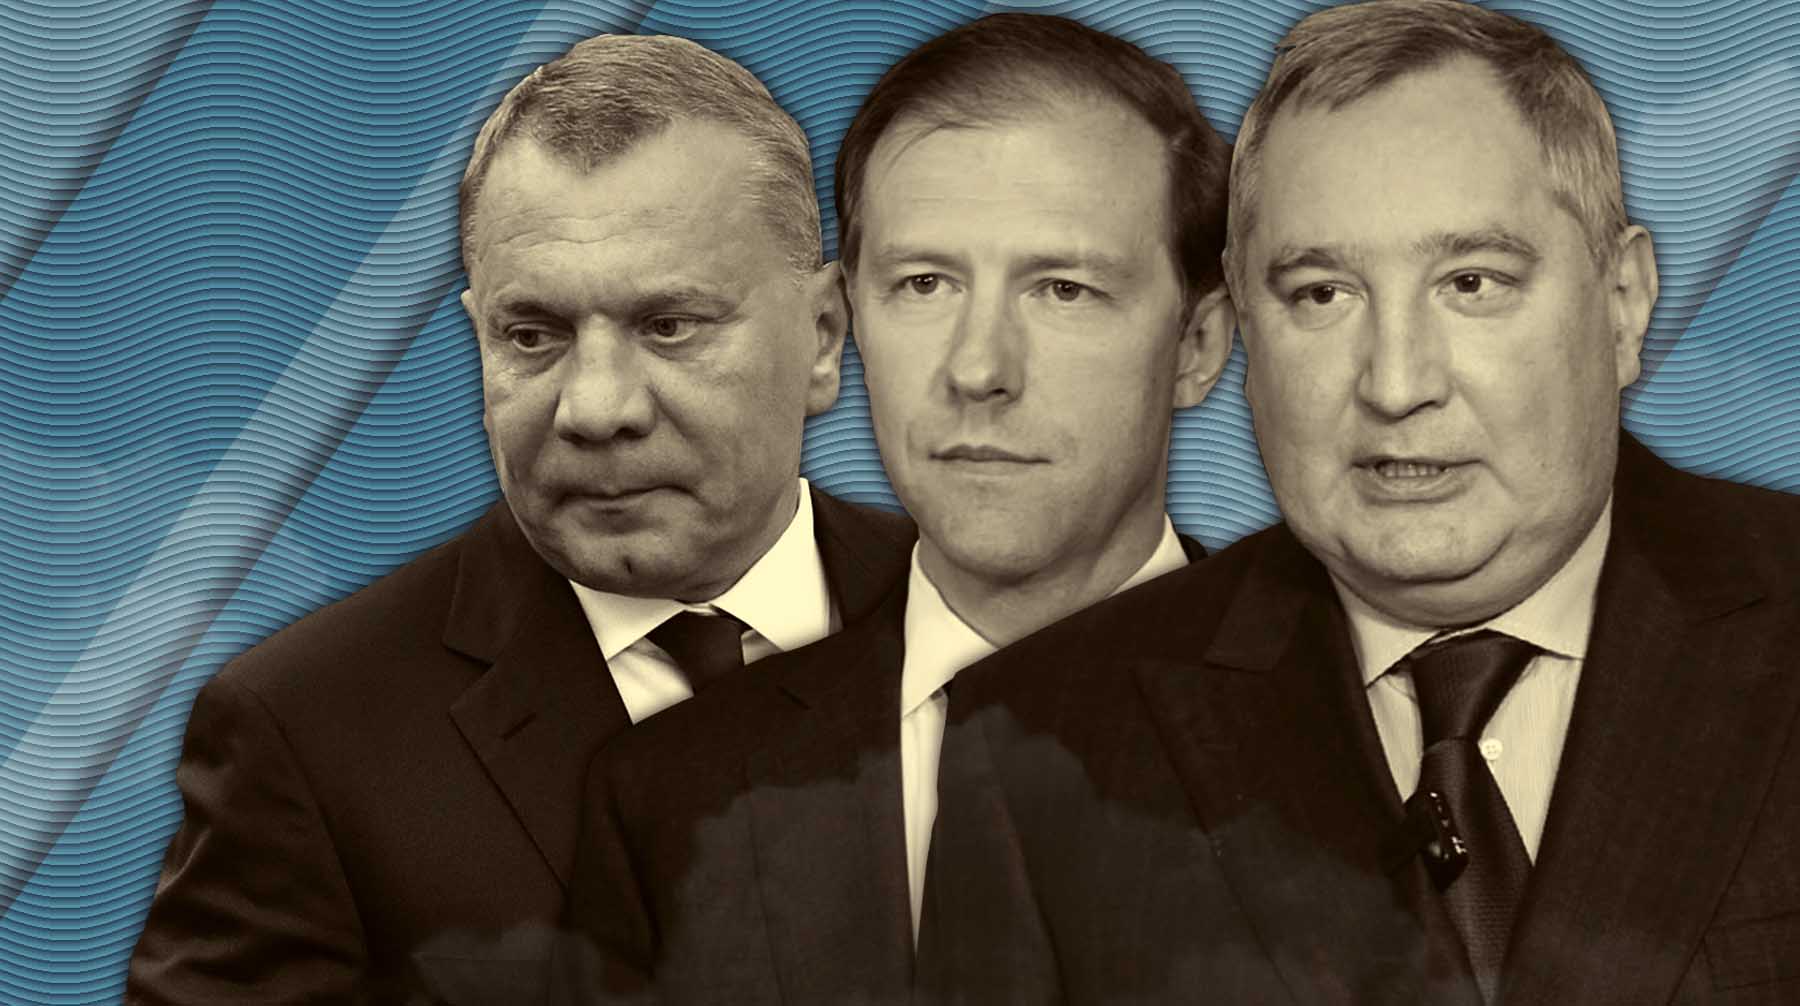 Политический треугольник «Мантуров, Борисов, Рогозин». К чему приведут кадровые перестановки в правительстве и «Роскосмосе»